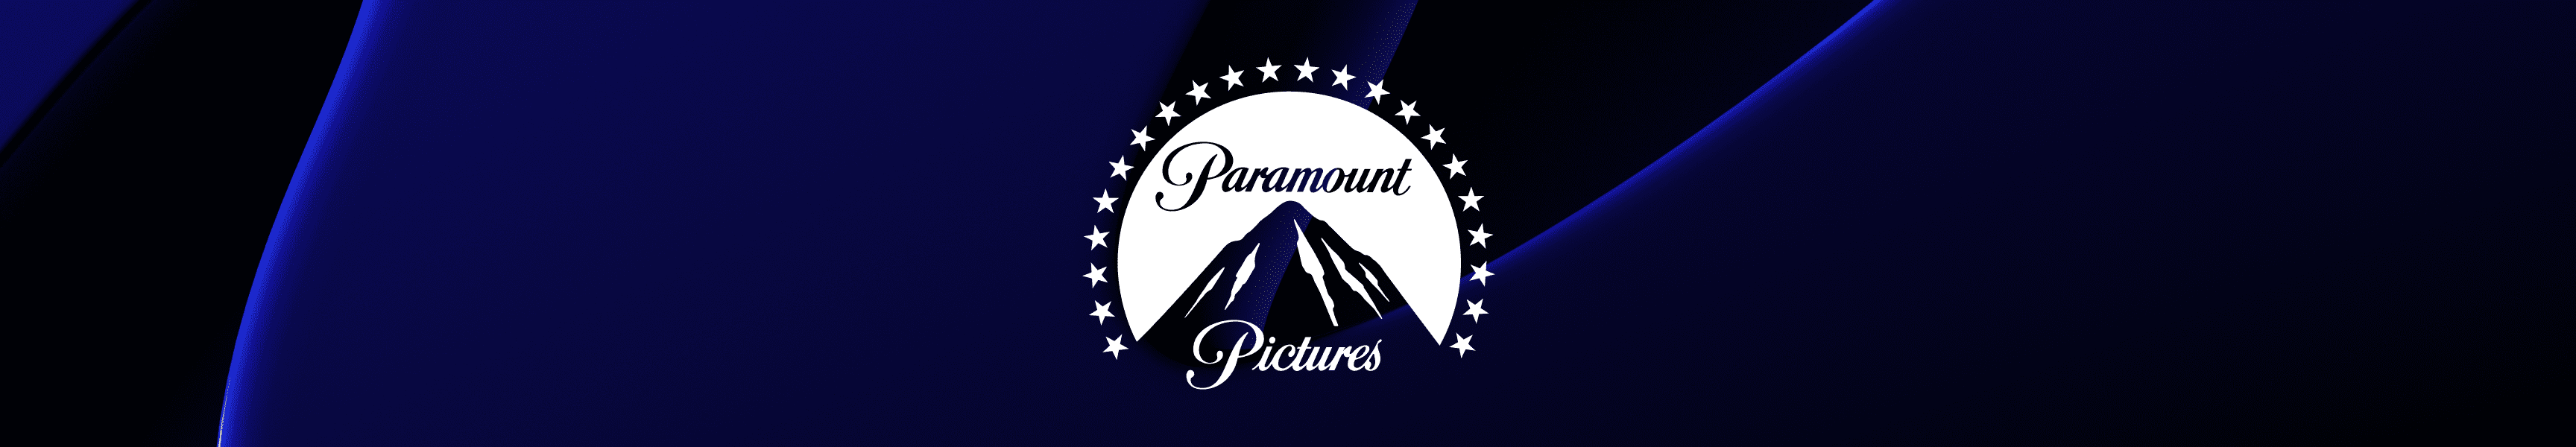 Paramount Pictures Accesorios para el pelo